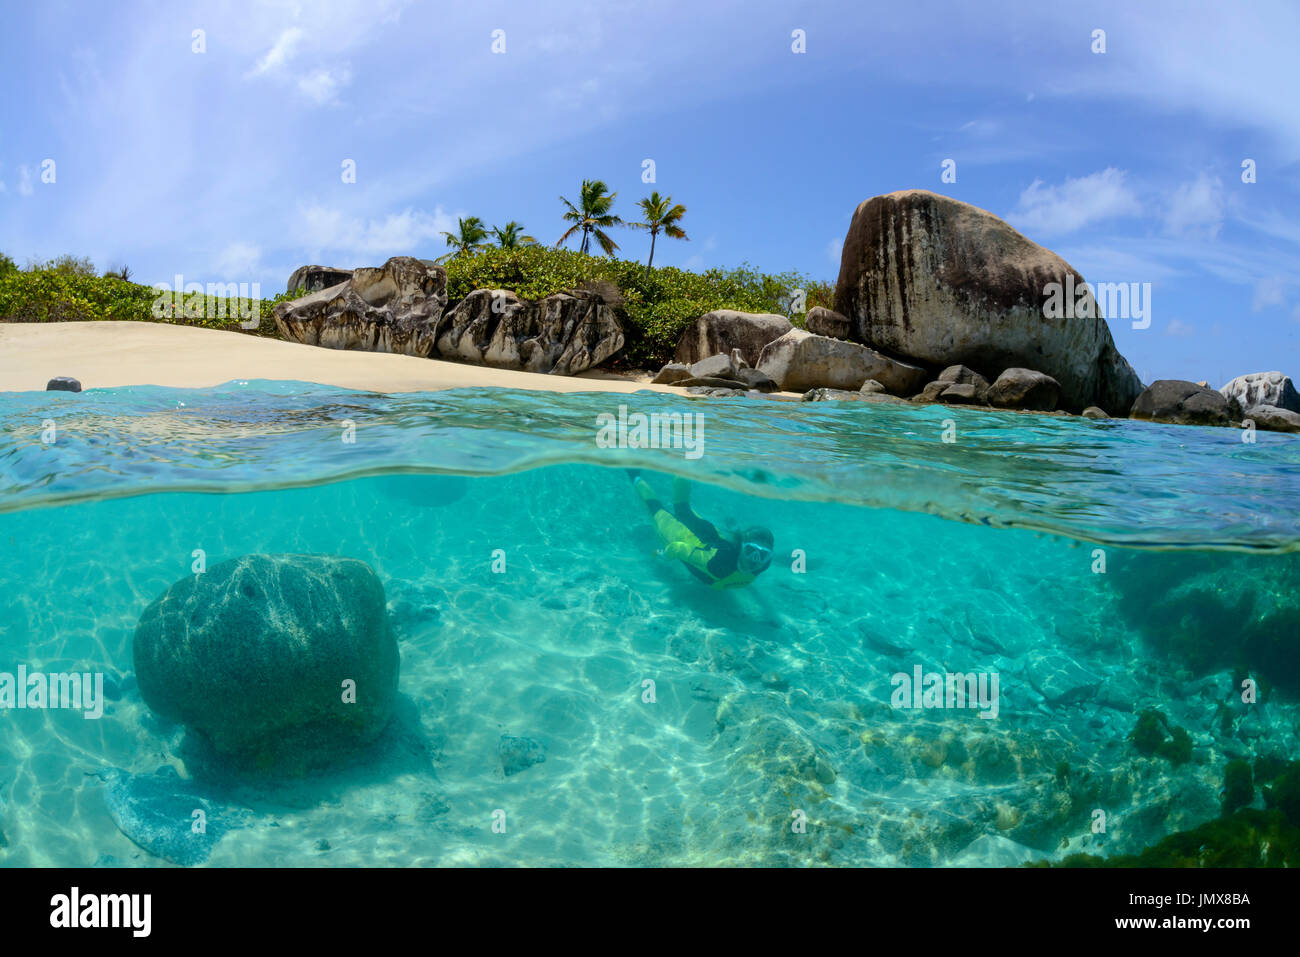 Immagine Splitlevel, spiaggia poco Trunk Bay e snorkeler con boulder, poco Trunk Bay, Virgin Gorda Isola, Isole Vergini Britanniche, Mar dei Caraibi Foto Stock